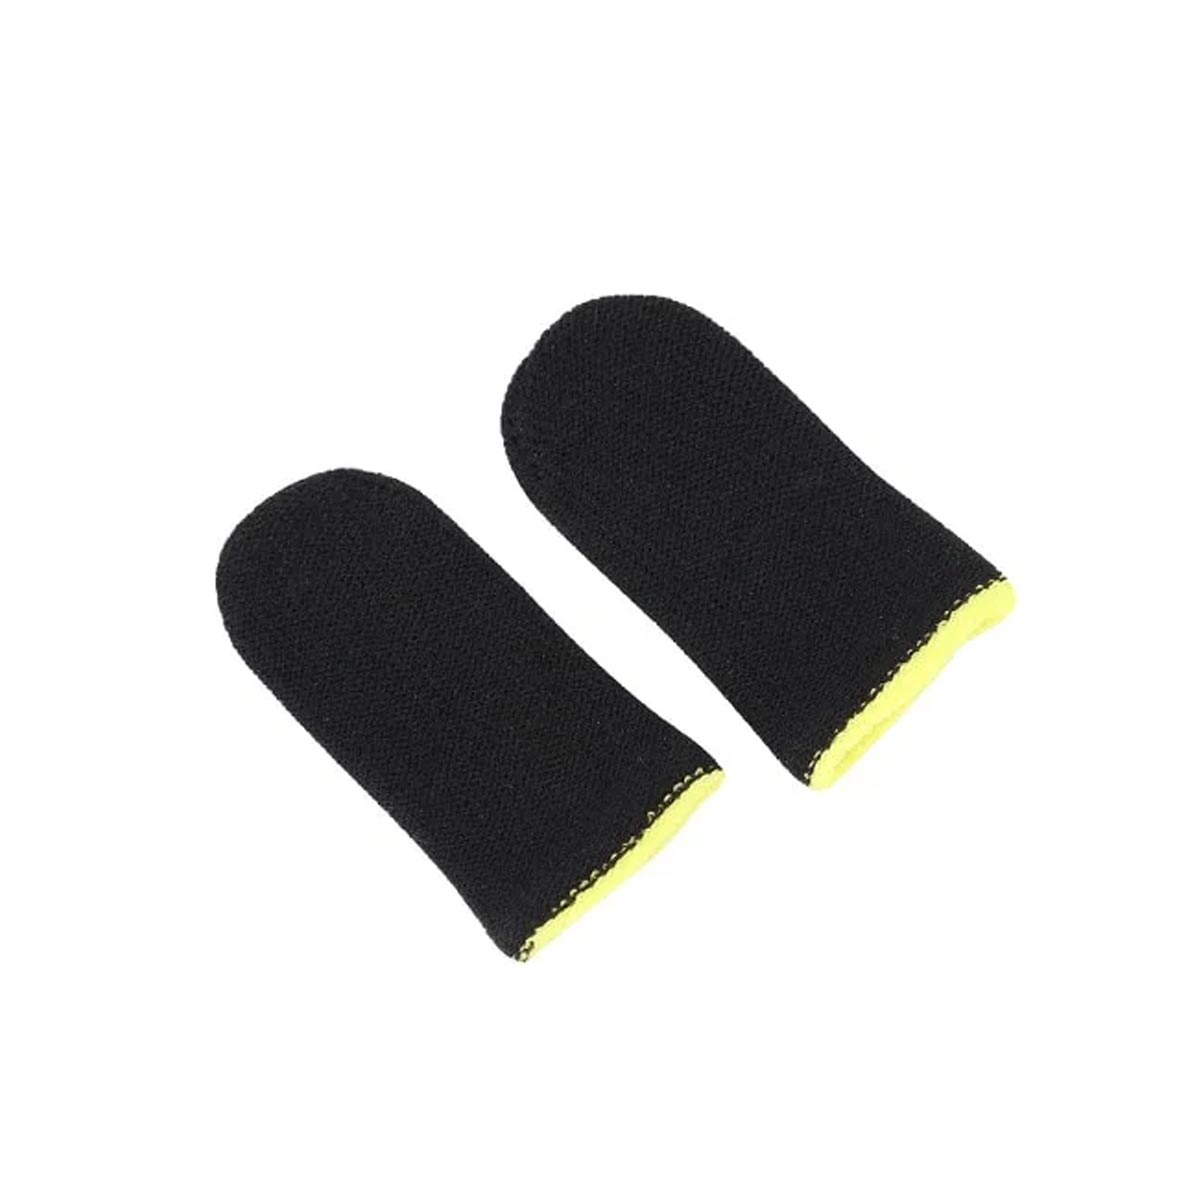 Сенсорные напальчники для игр на смартфоне (комплект 2 шт.), цвет черно желтый